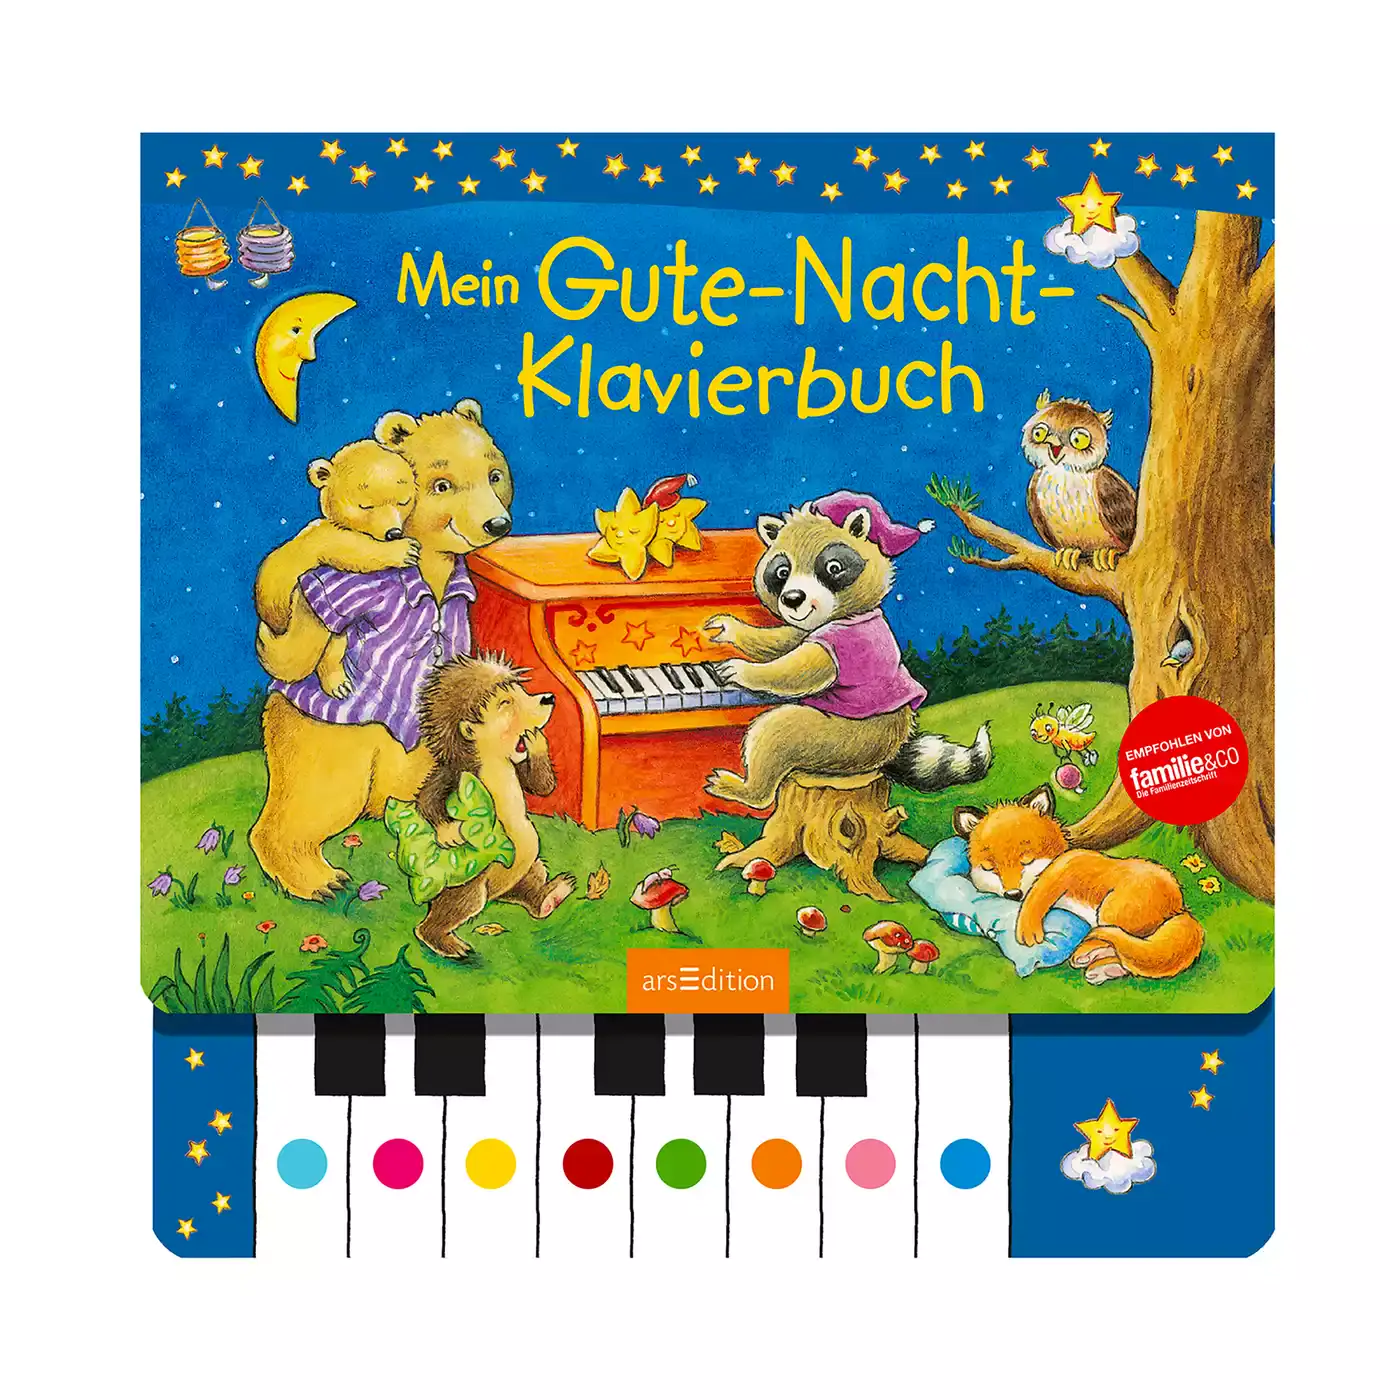 Mein Gute-Nacht-Klavierbuch arsEdition 2000574913766 1